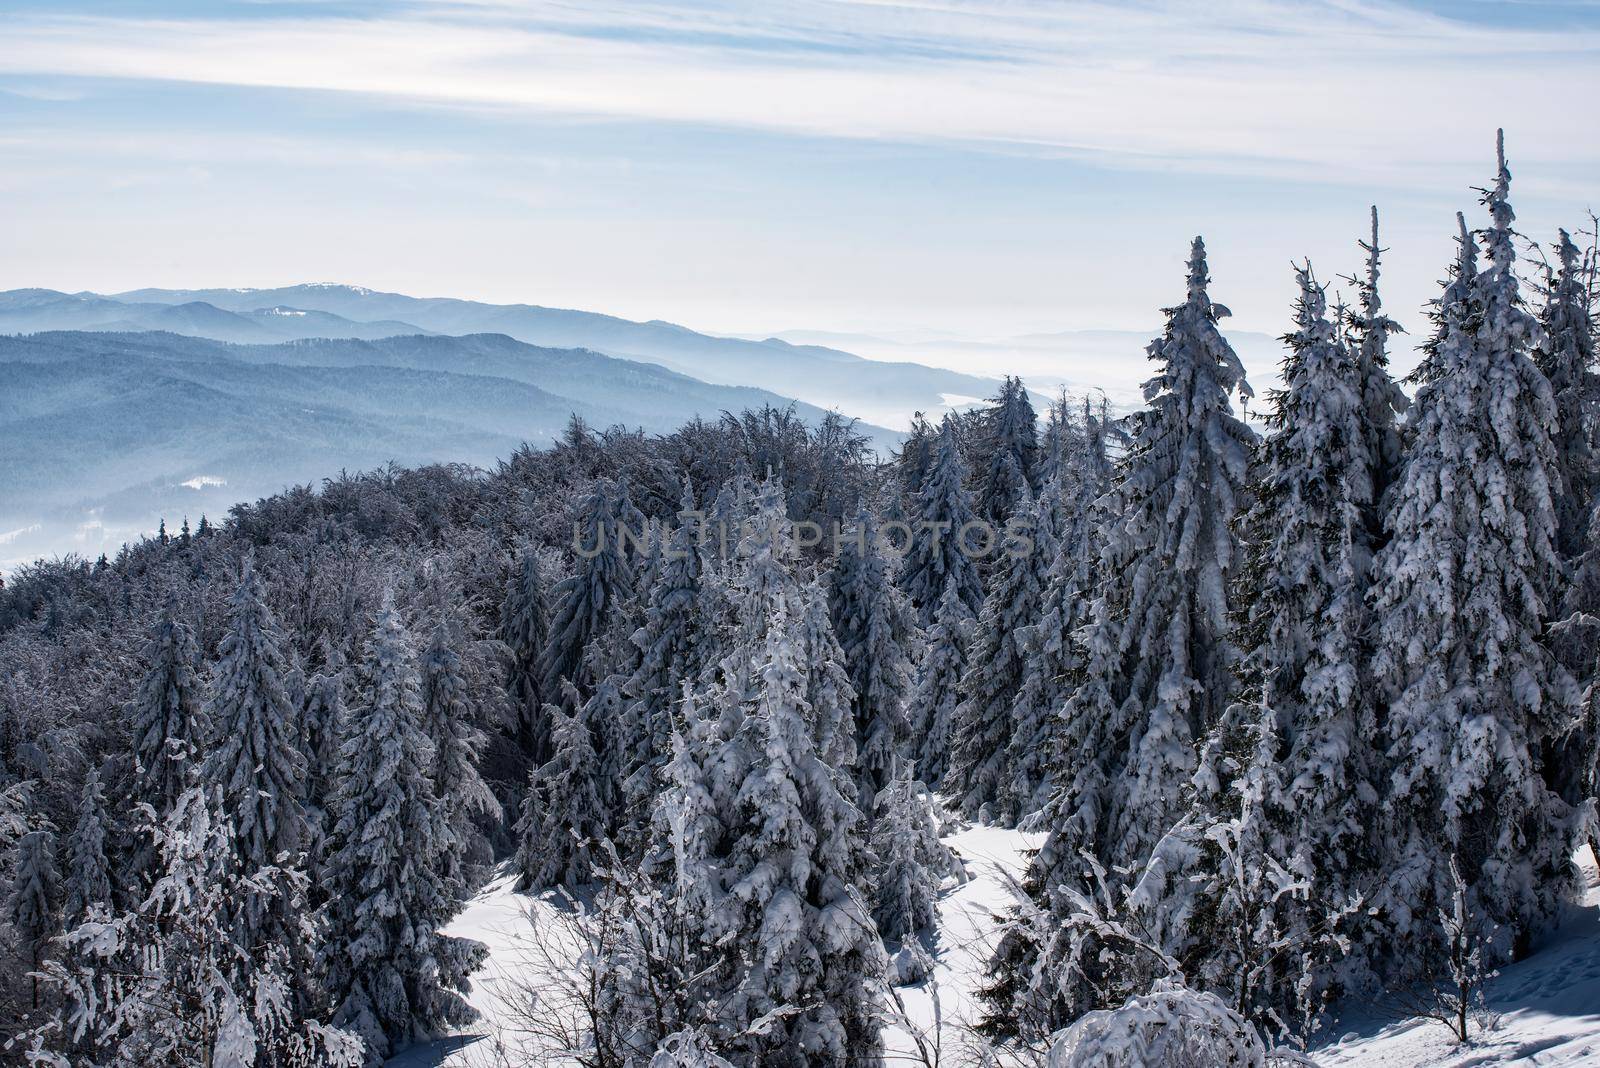 Winter mountain landscape by wdnet_studio